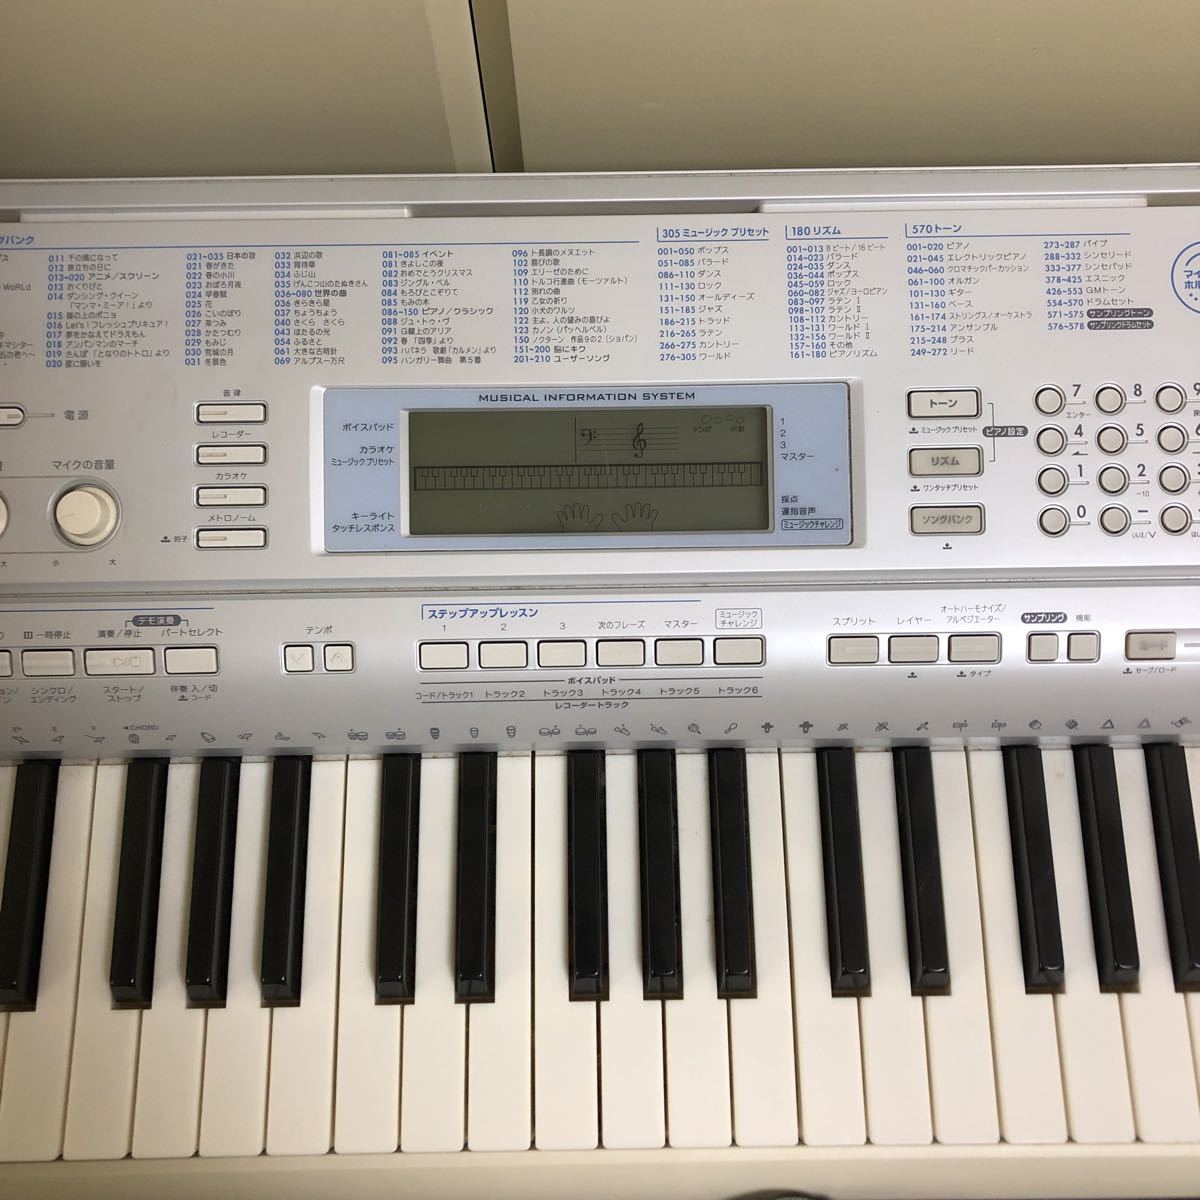 CASIO カシオ 光ナビゲーション キーボード 電子ピアノ LK-207 本体 61鍵 鍵盤 ピアノ シンセサイザー 楽器 ACアダプタ付 動作品